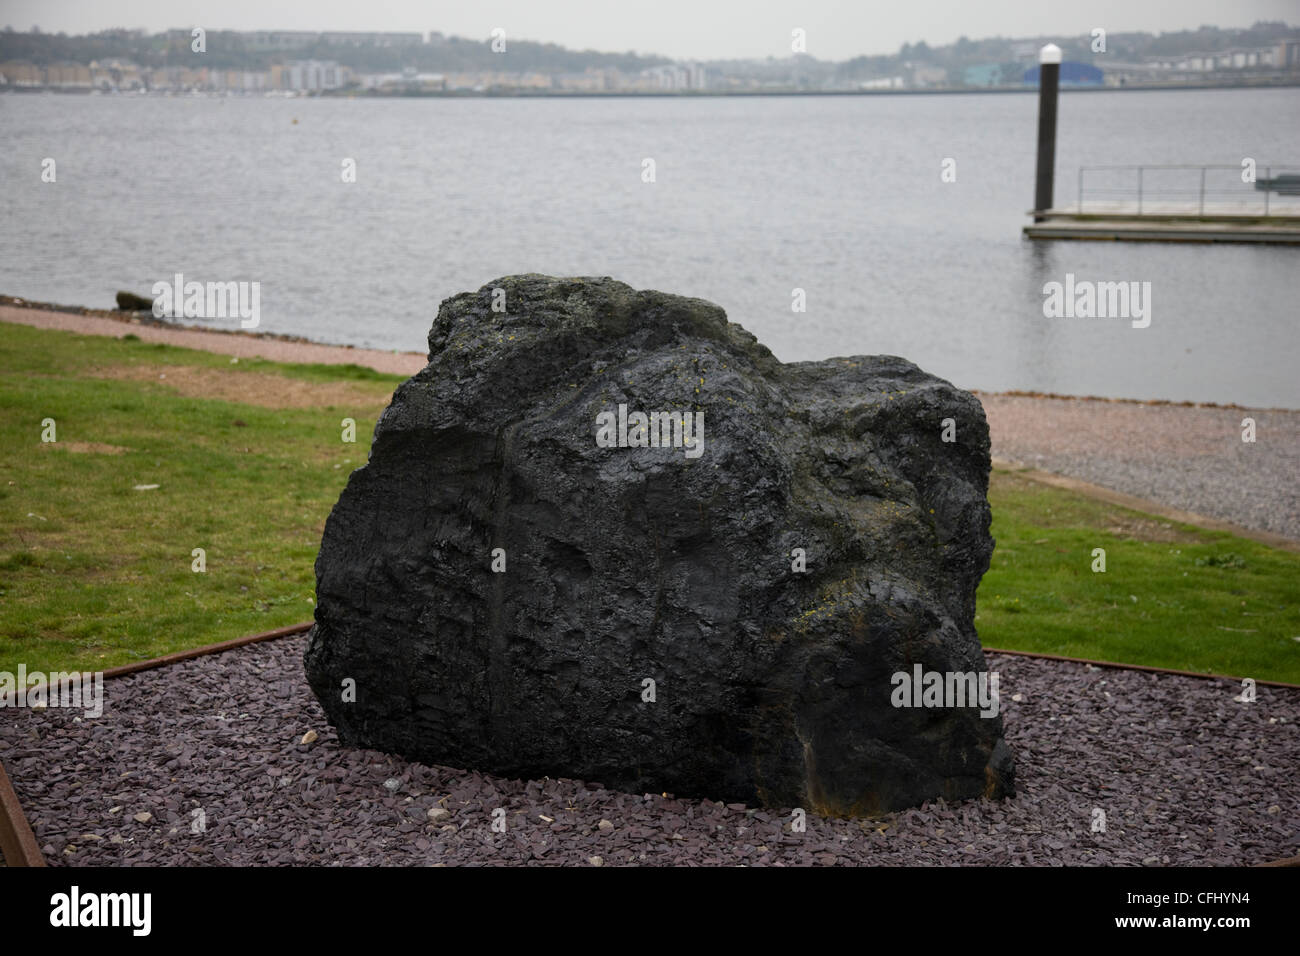 Grand morceau de charbon extrait sur l'affichage dans la baie de Cardiff Banque D'Images